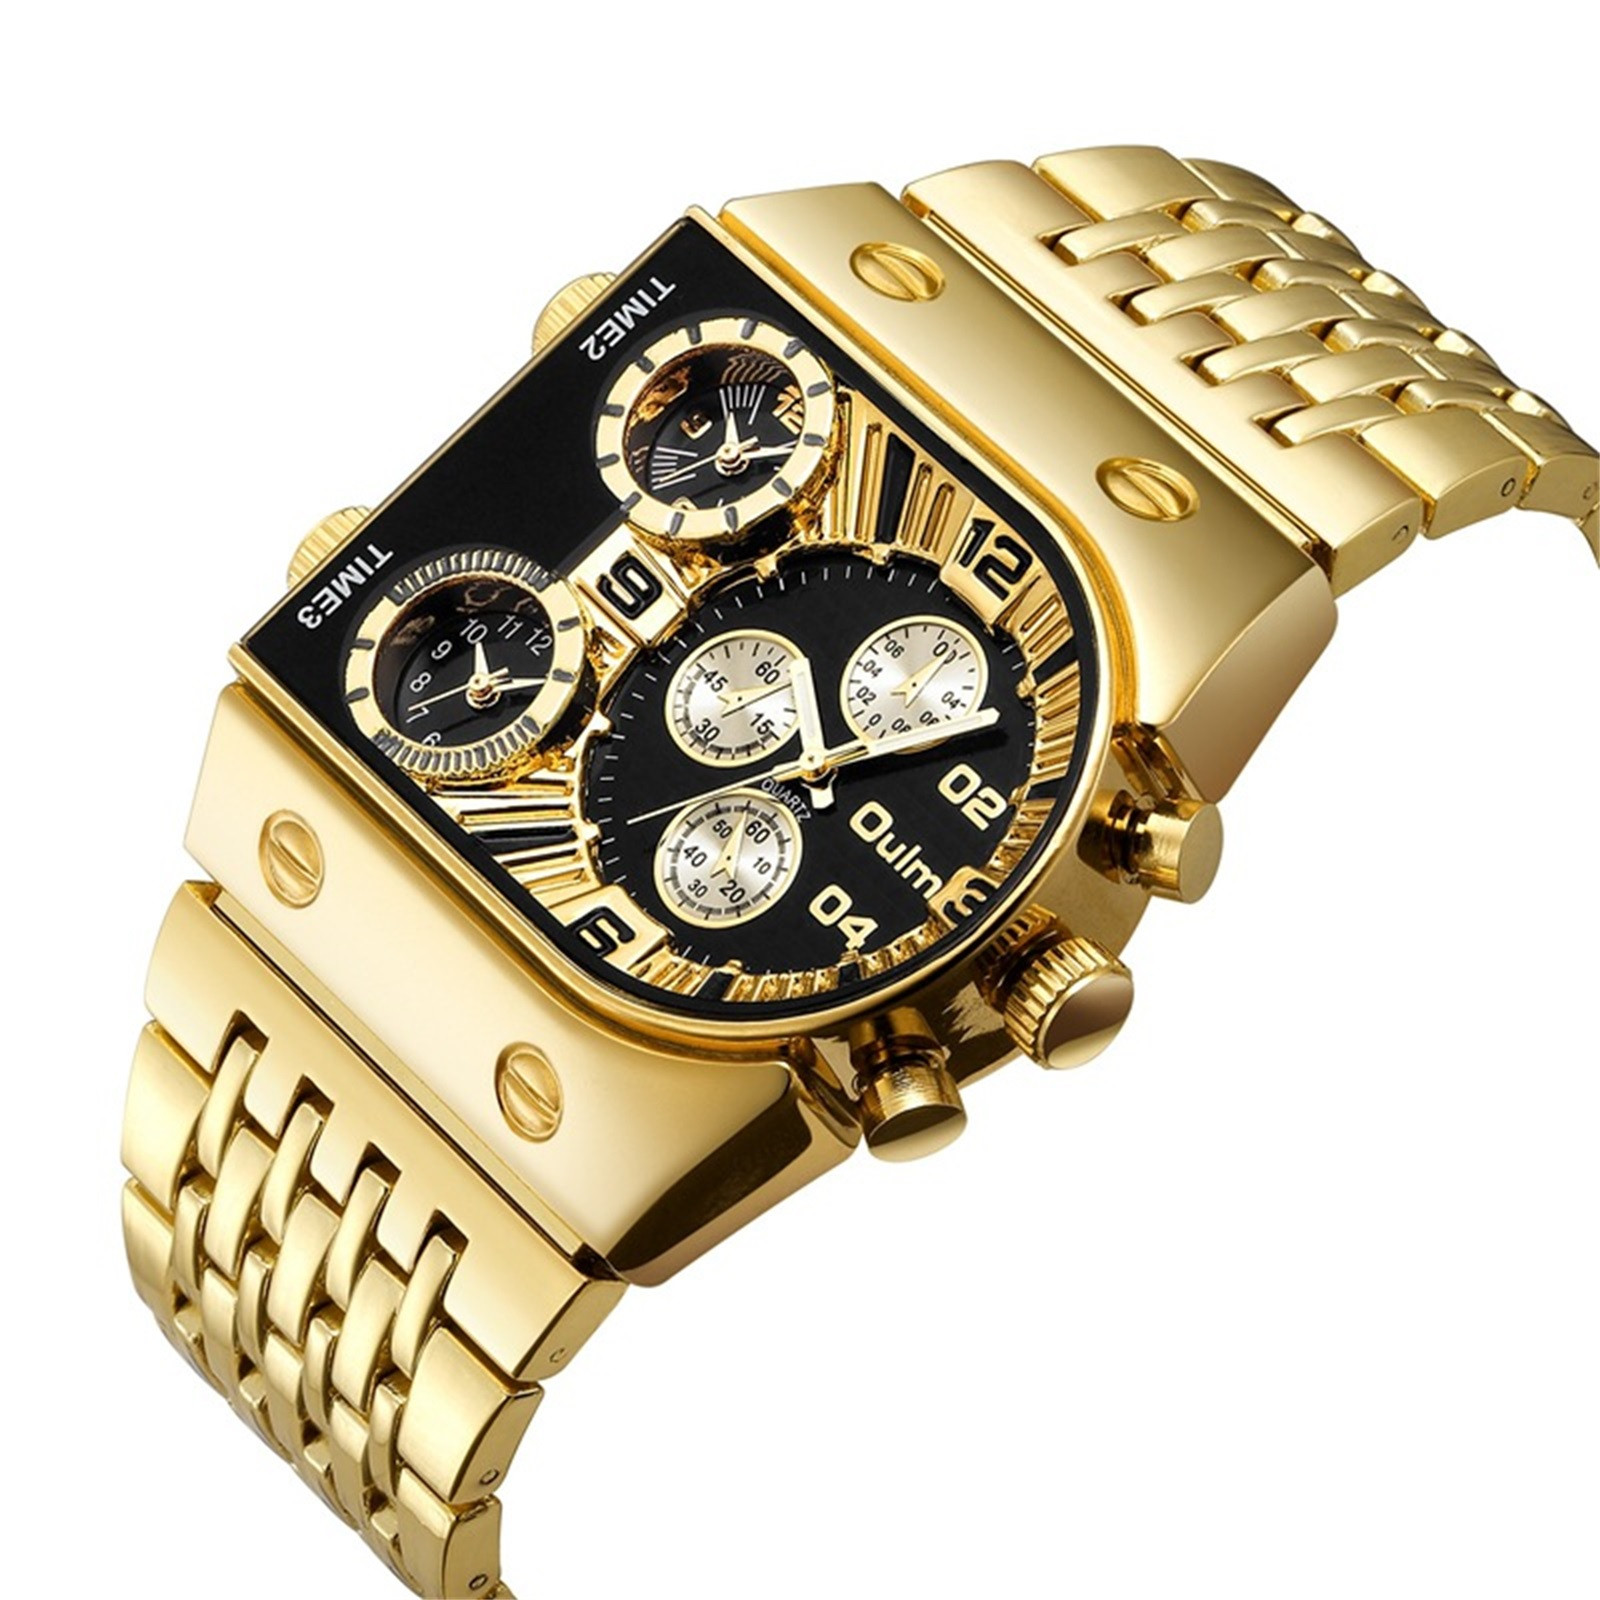 Stiwee Mens Watch Wrist Watches for Man Dad Birthday Gift Watch Steel ...